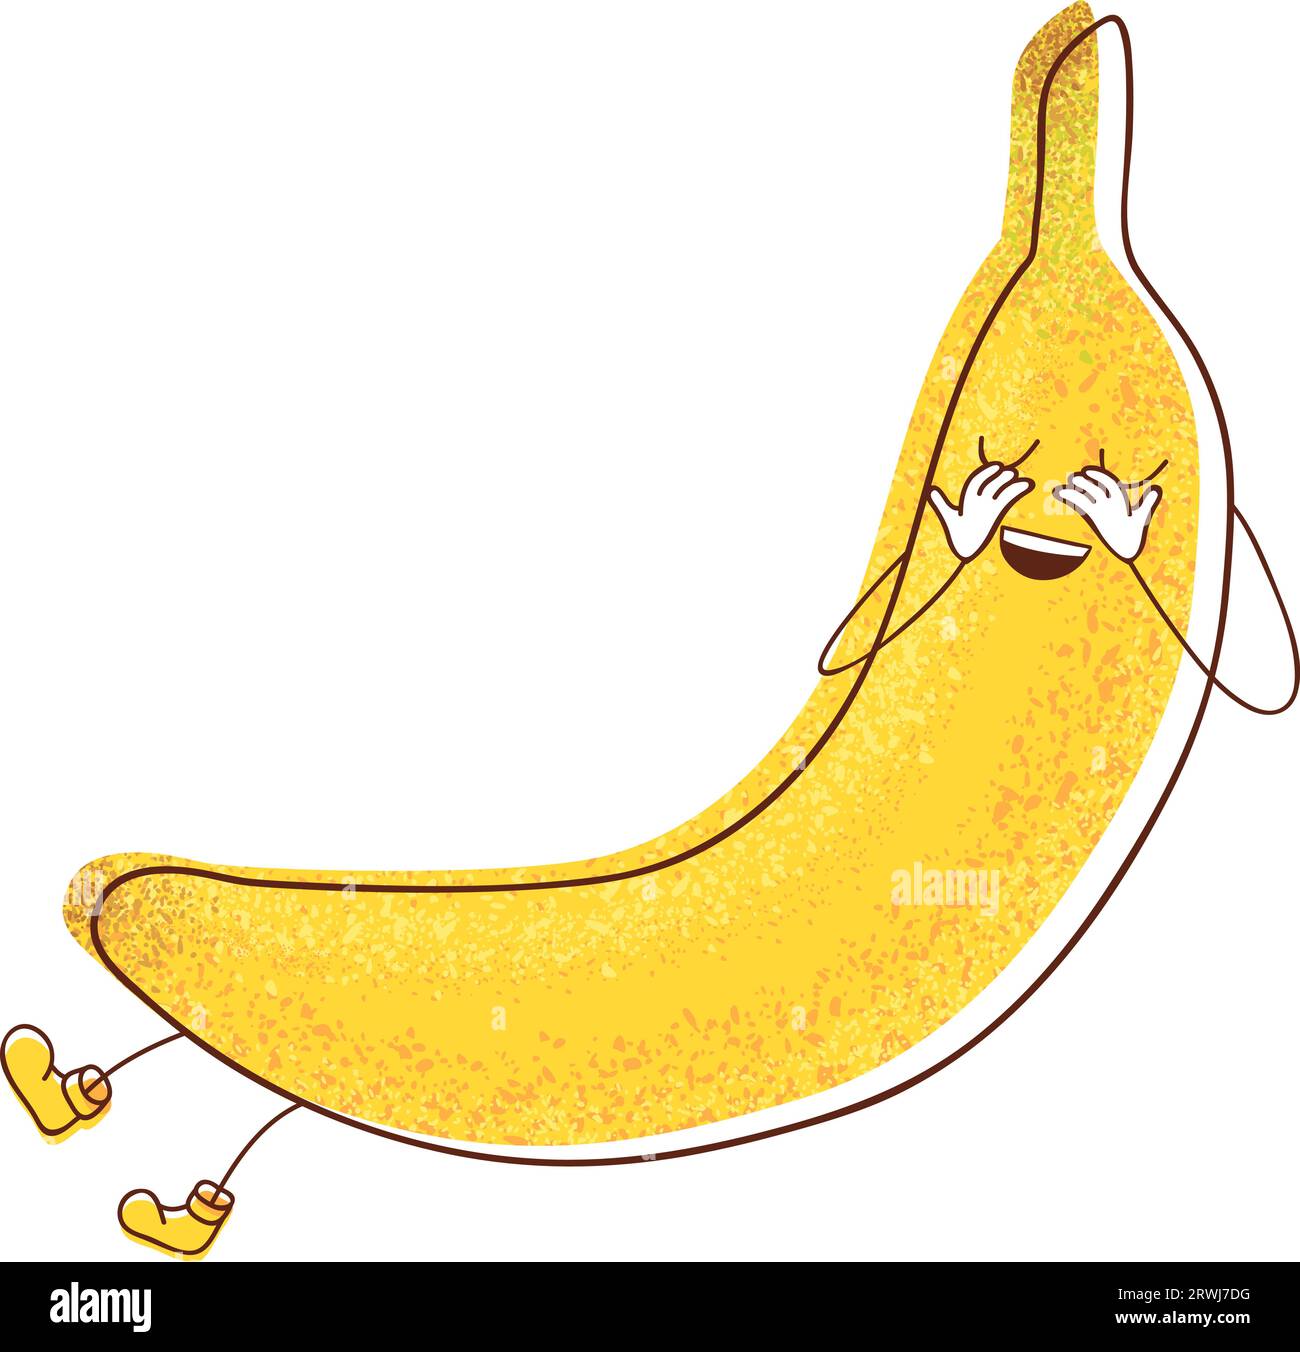 Un'illustrazione di una timida banana che chiude gli occhi, che ritrae un senso di modestia. Illustrazione Vettoriale